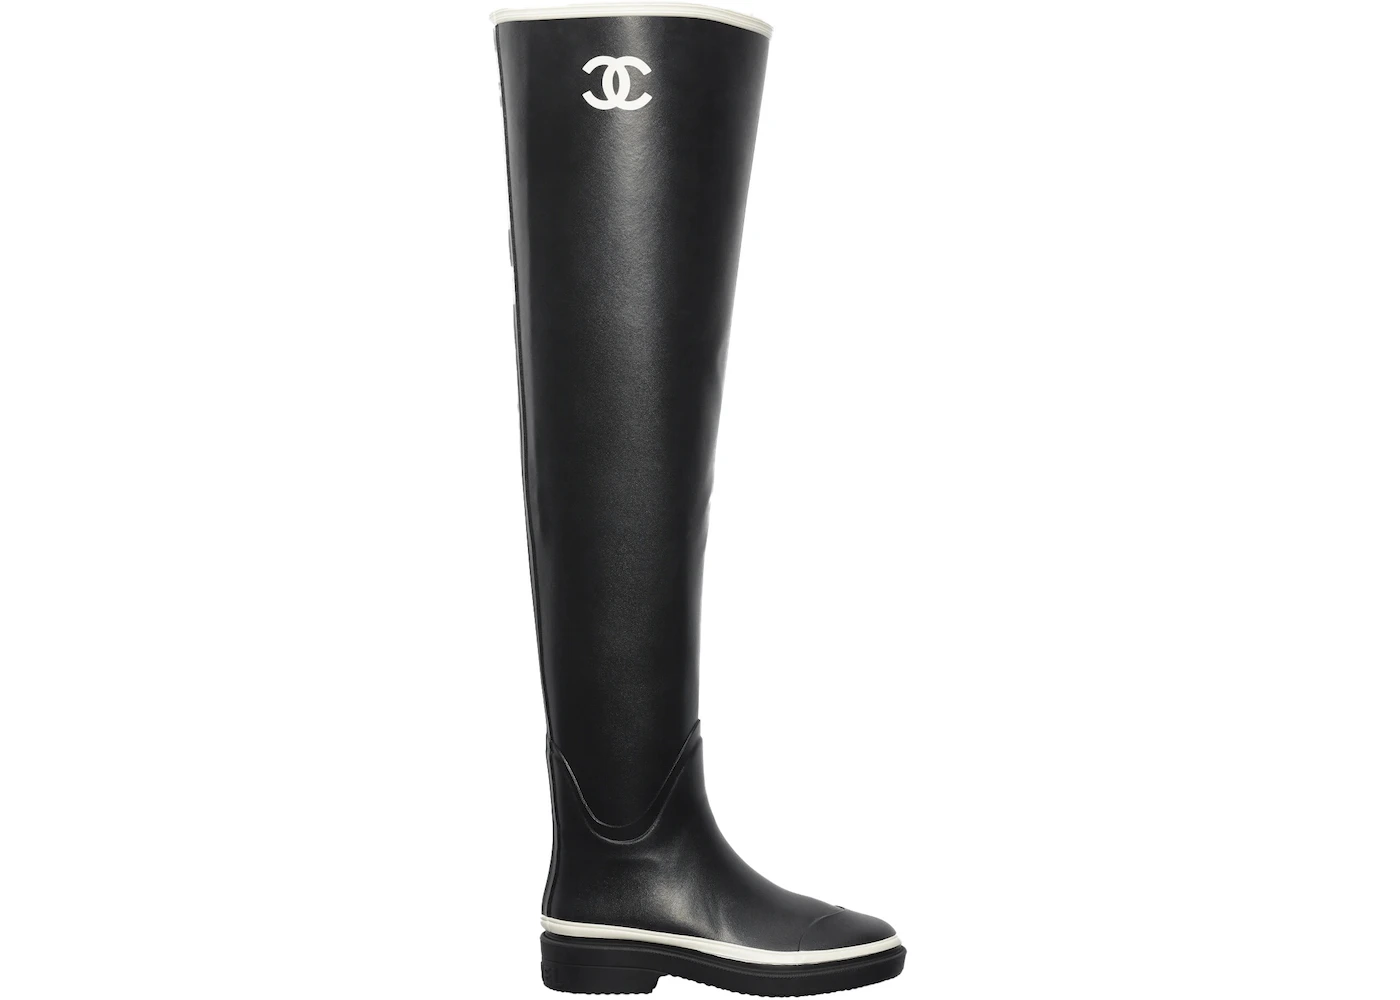 Chanel Thigh High Rubber Rain Boots Black